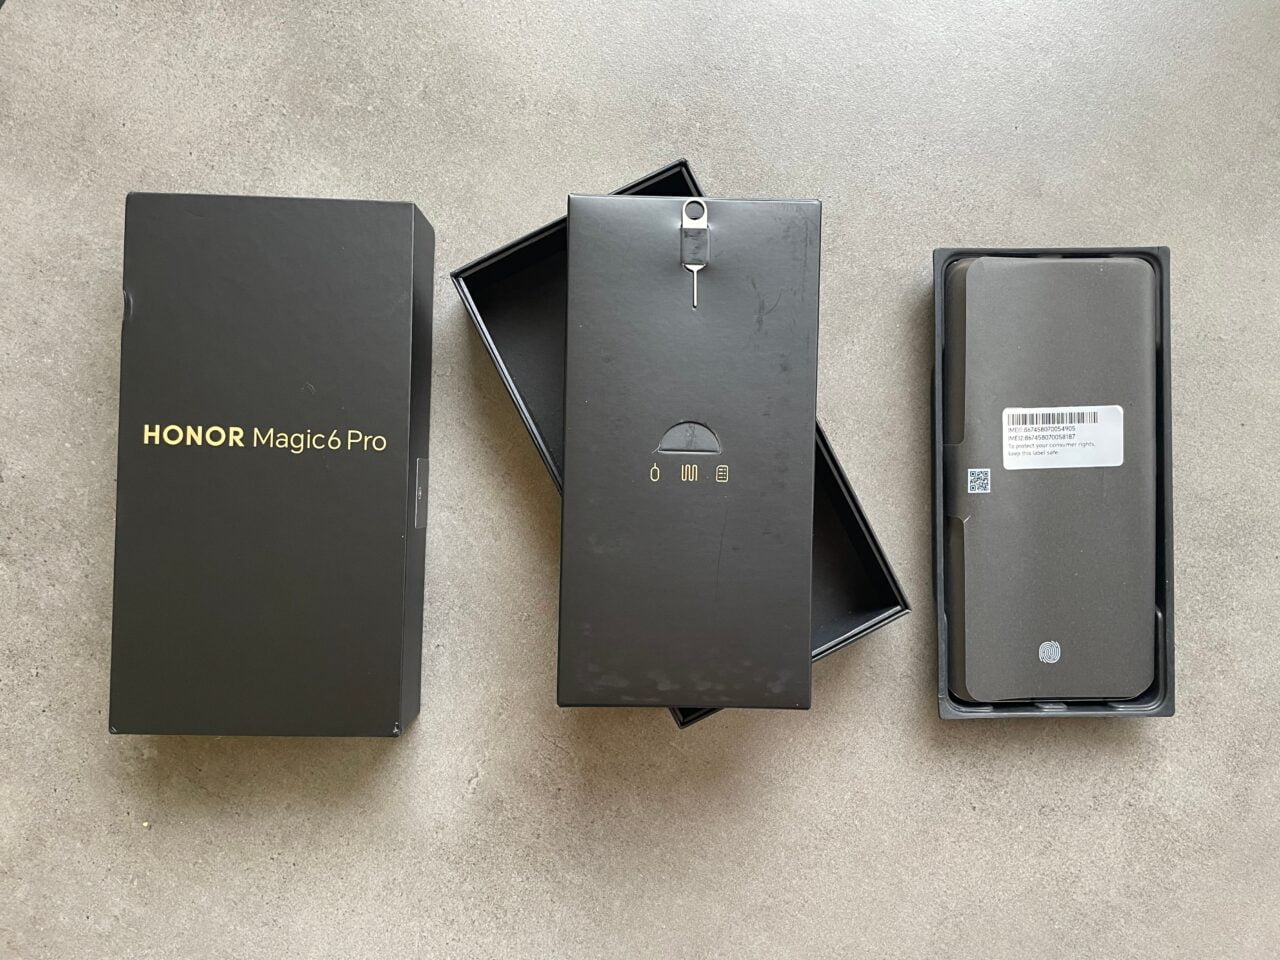 Zestaw pudełek telefonu komórkowego HONOR Magic6 Pro, w tym czarne pudełko zewnętrzne z napisem złotym, otwarte pudełko środkowe i wewnętrzne z plastikową tacą, na szarym tle.